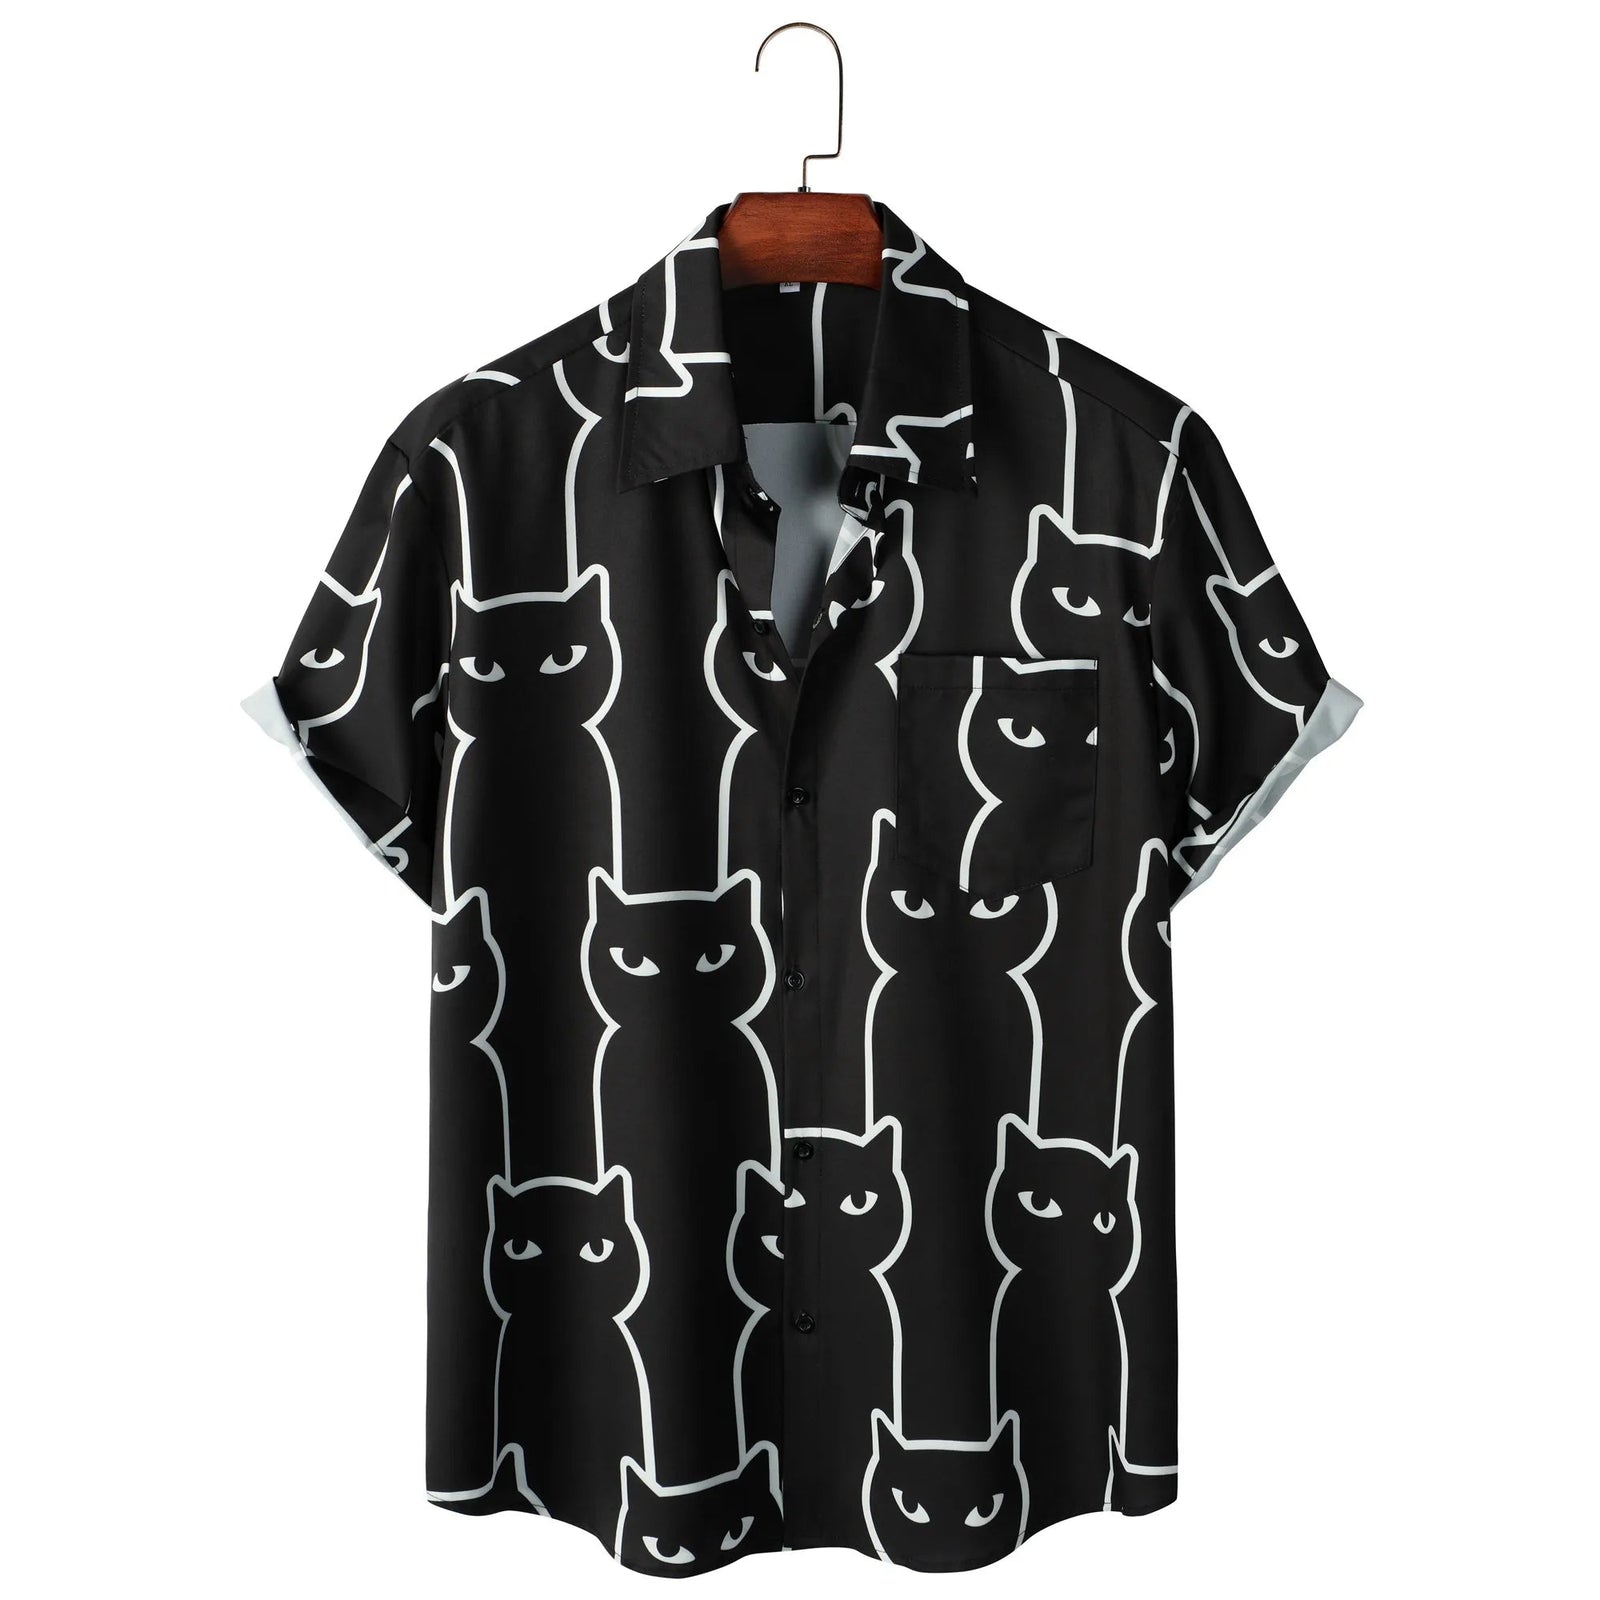 Black Cat Button Up Shirt - CatX Fiesta